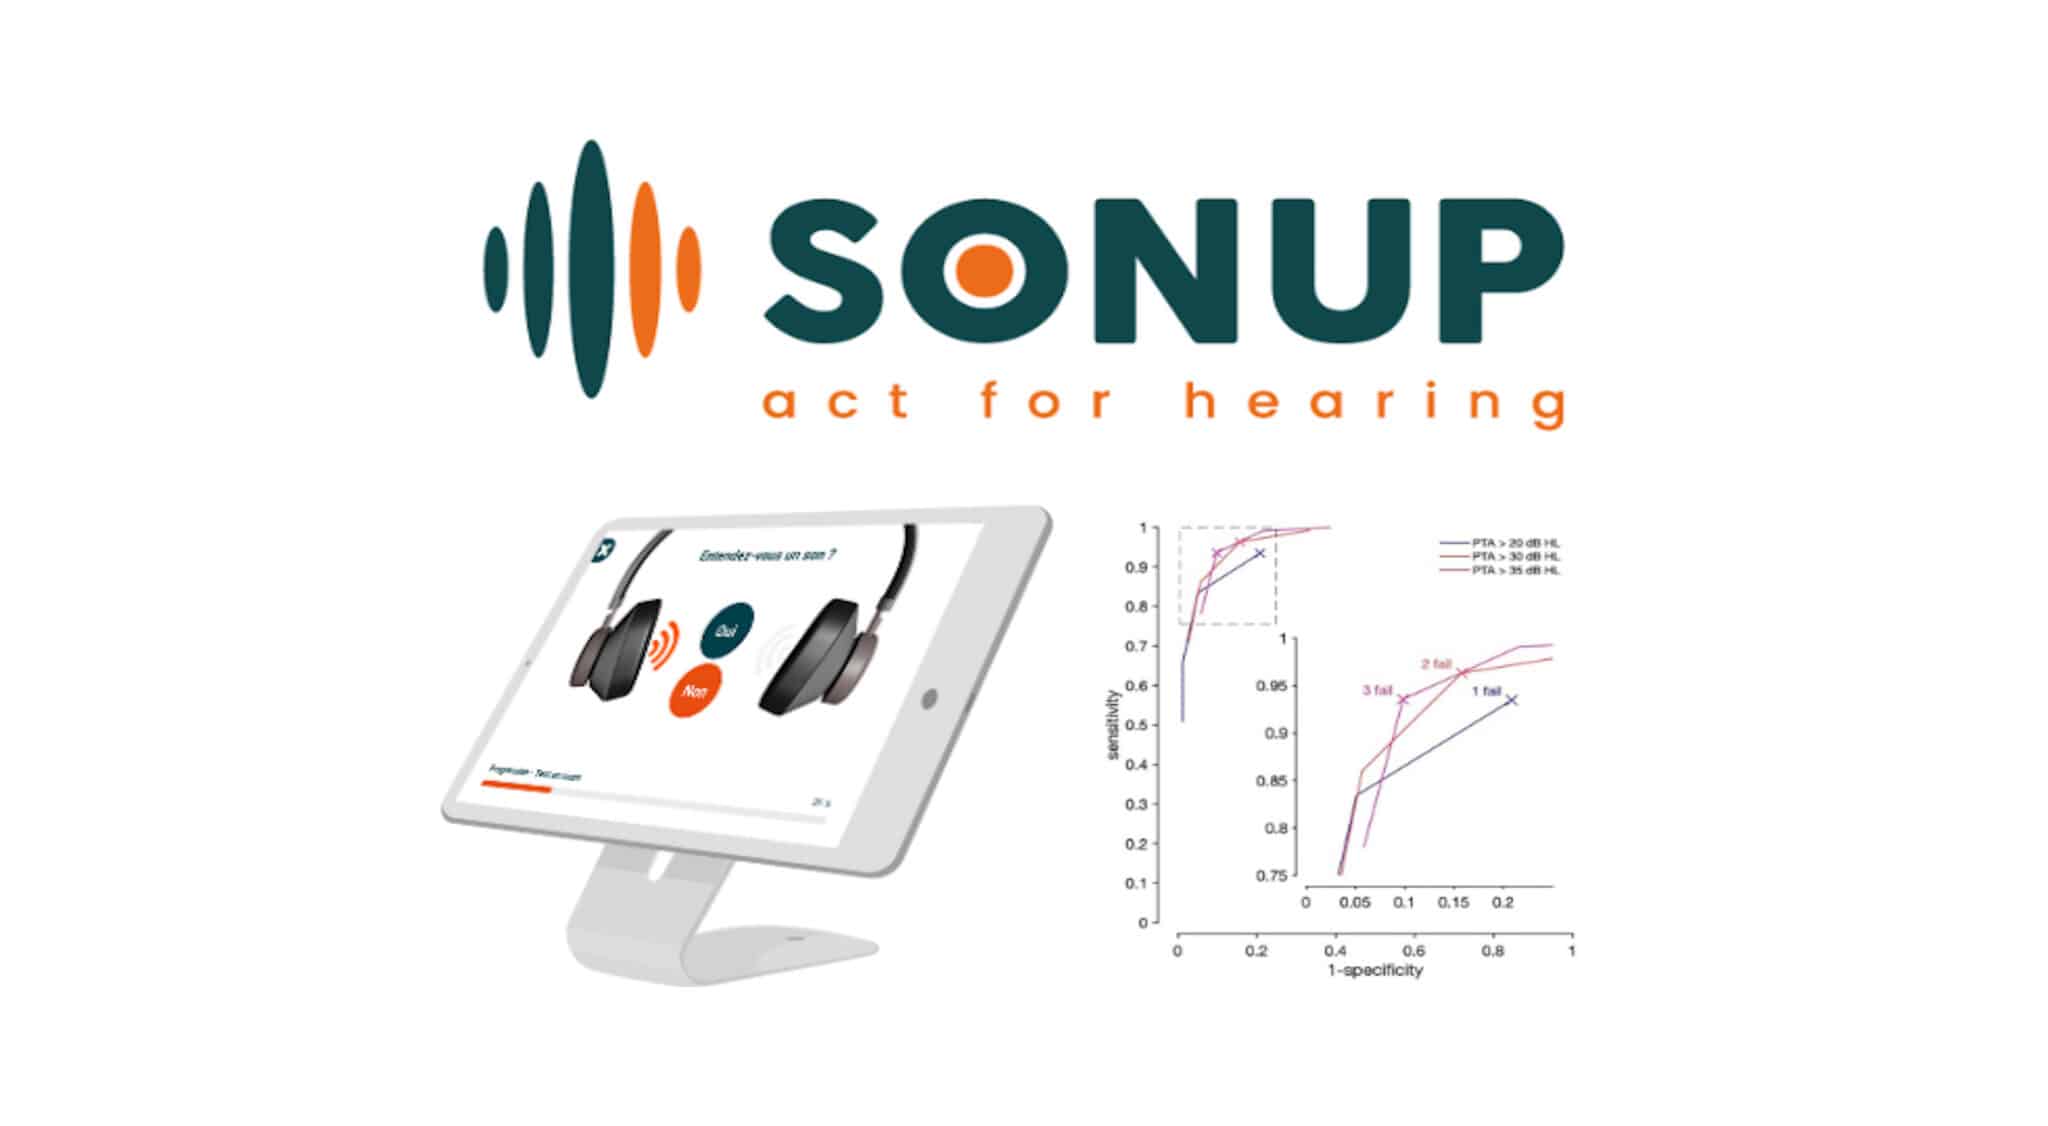 L’International Journal of Audiology valide les performances du test de dépistage auditif tonal “SoTone” de Sonup